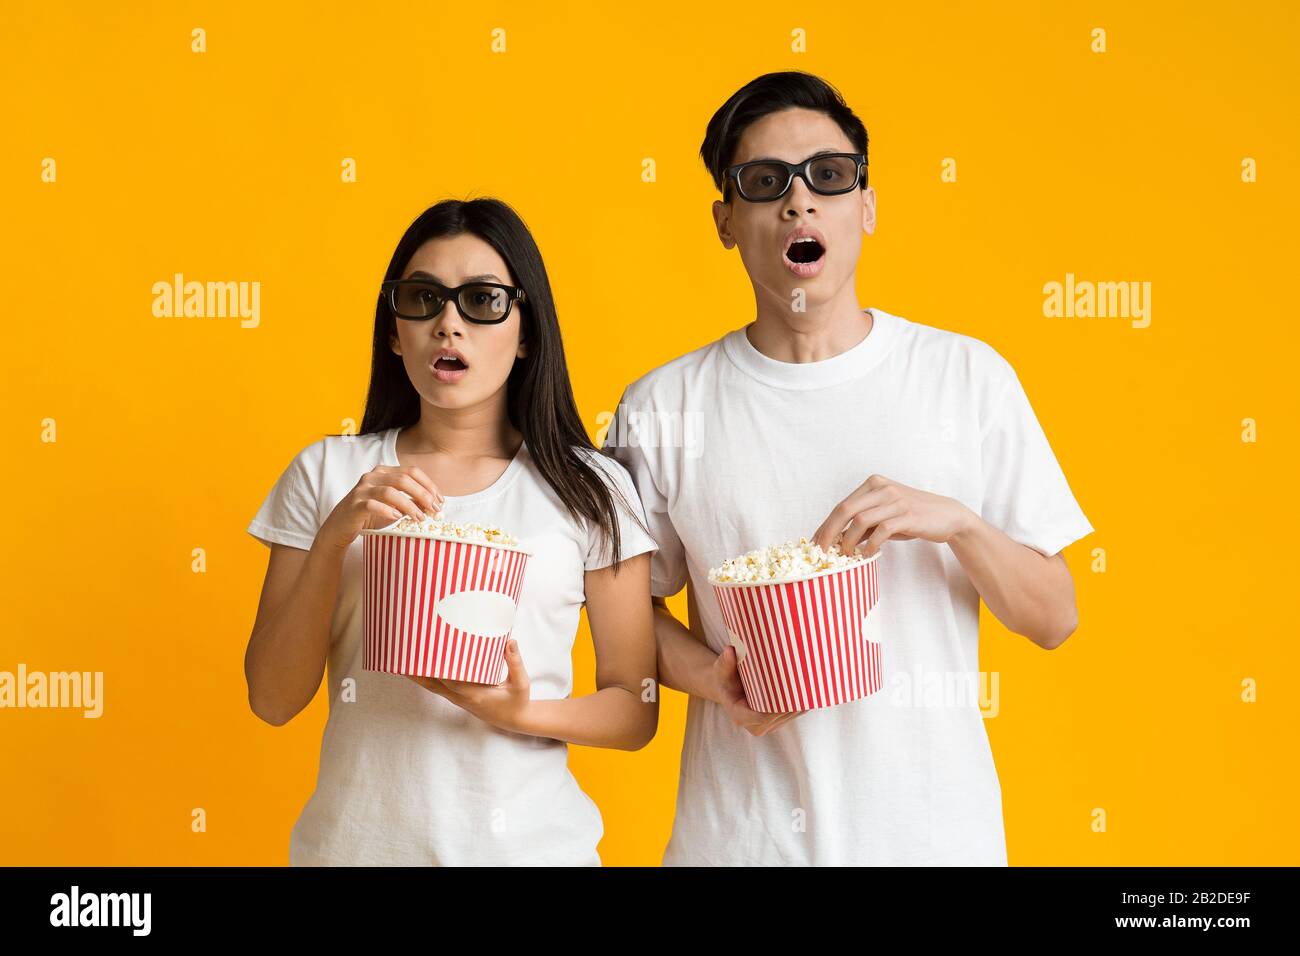 Una pareja asiática aturdida con gafas 3d viendo una película con palomitas de maíz Foto de stock